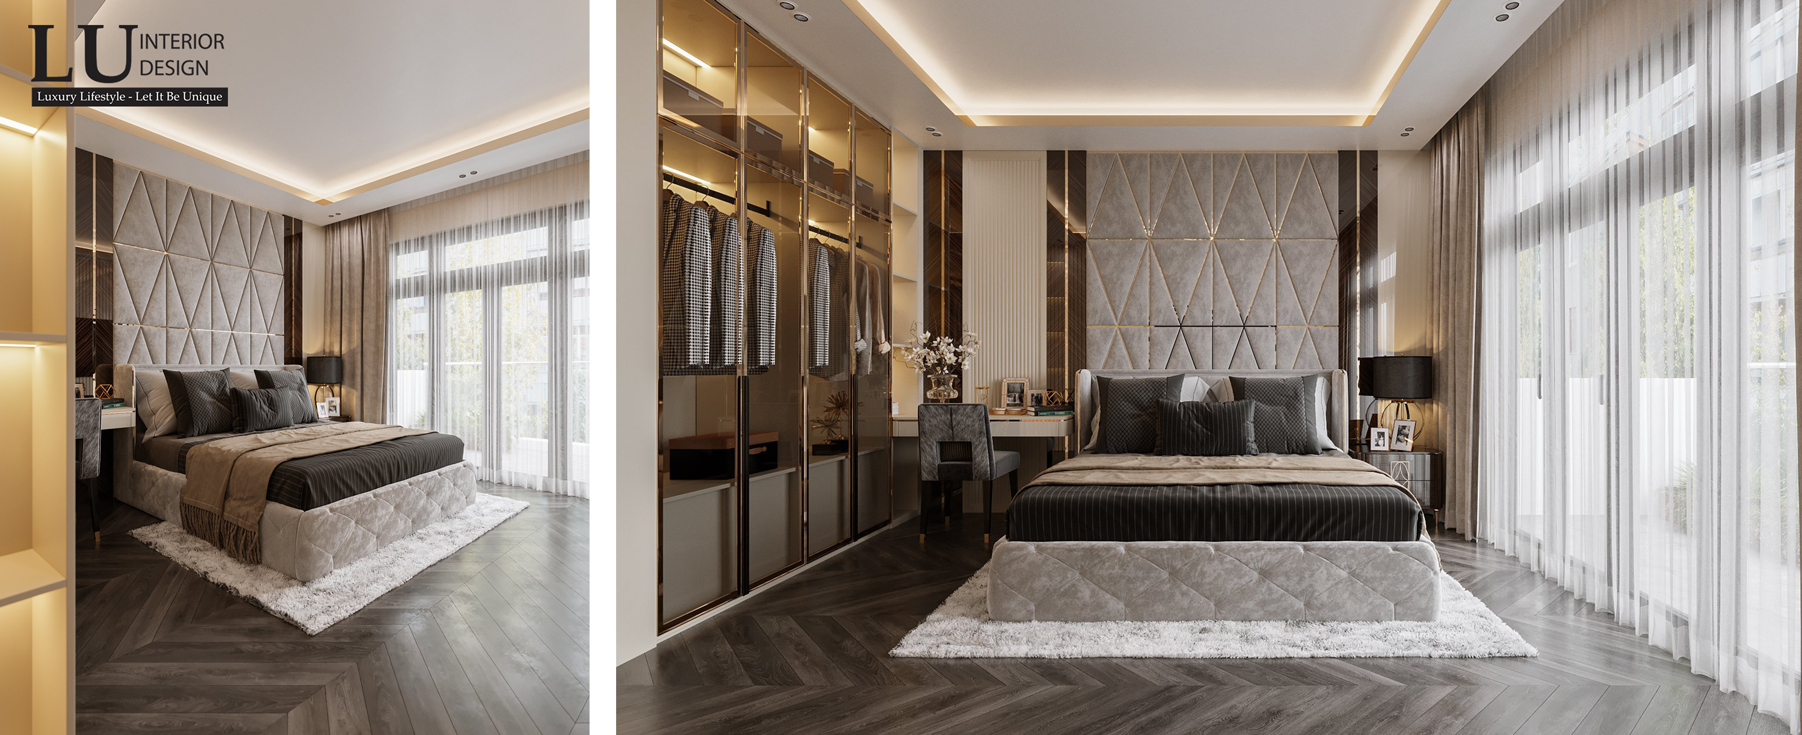 Phòng ngủ với gam màu trung tính sang trọng theo phong cách Modern Classic | Nhà phố Tân phú - LU Design.